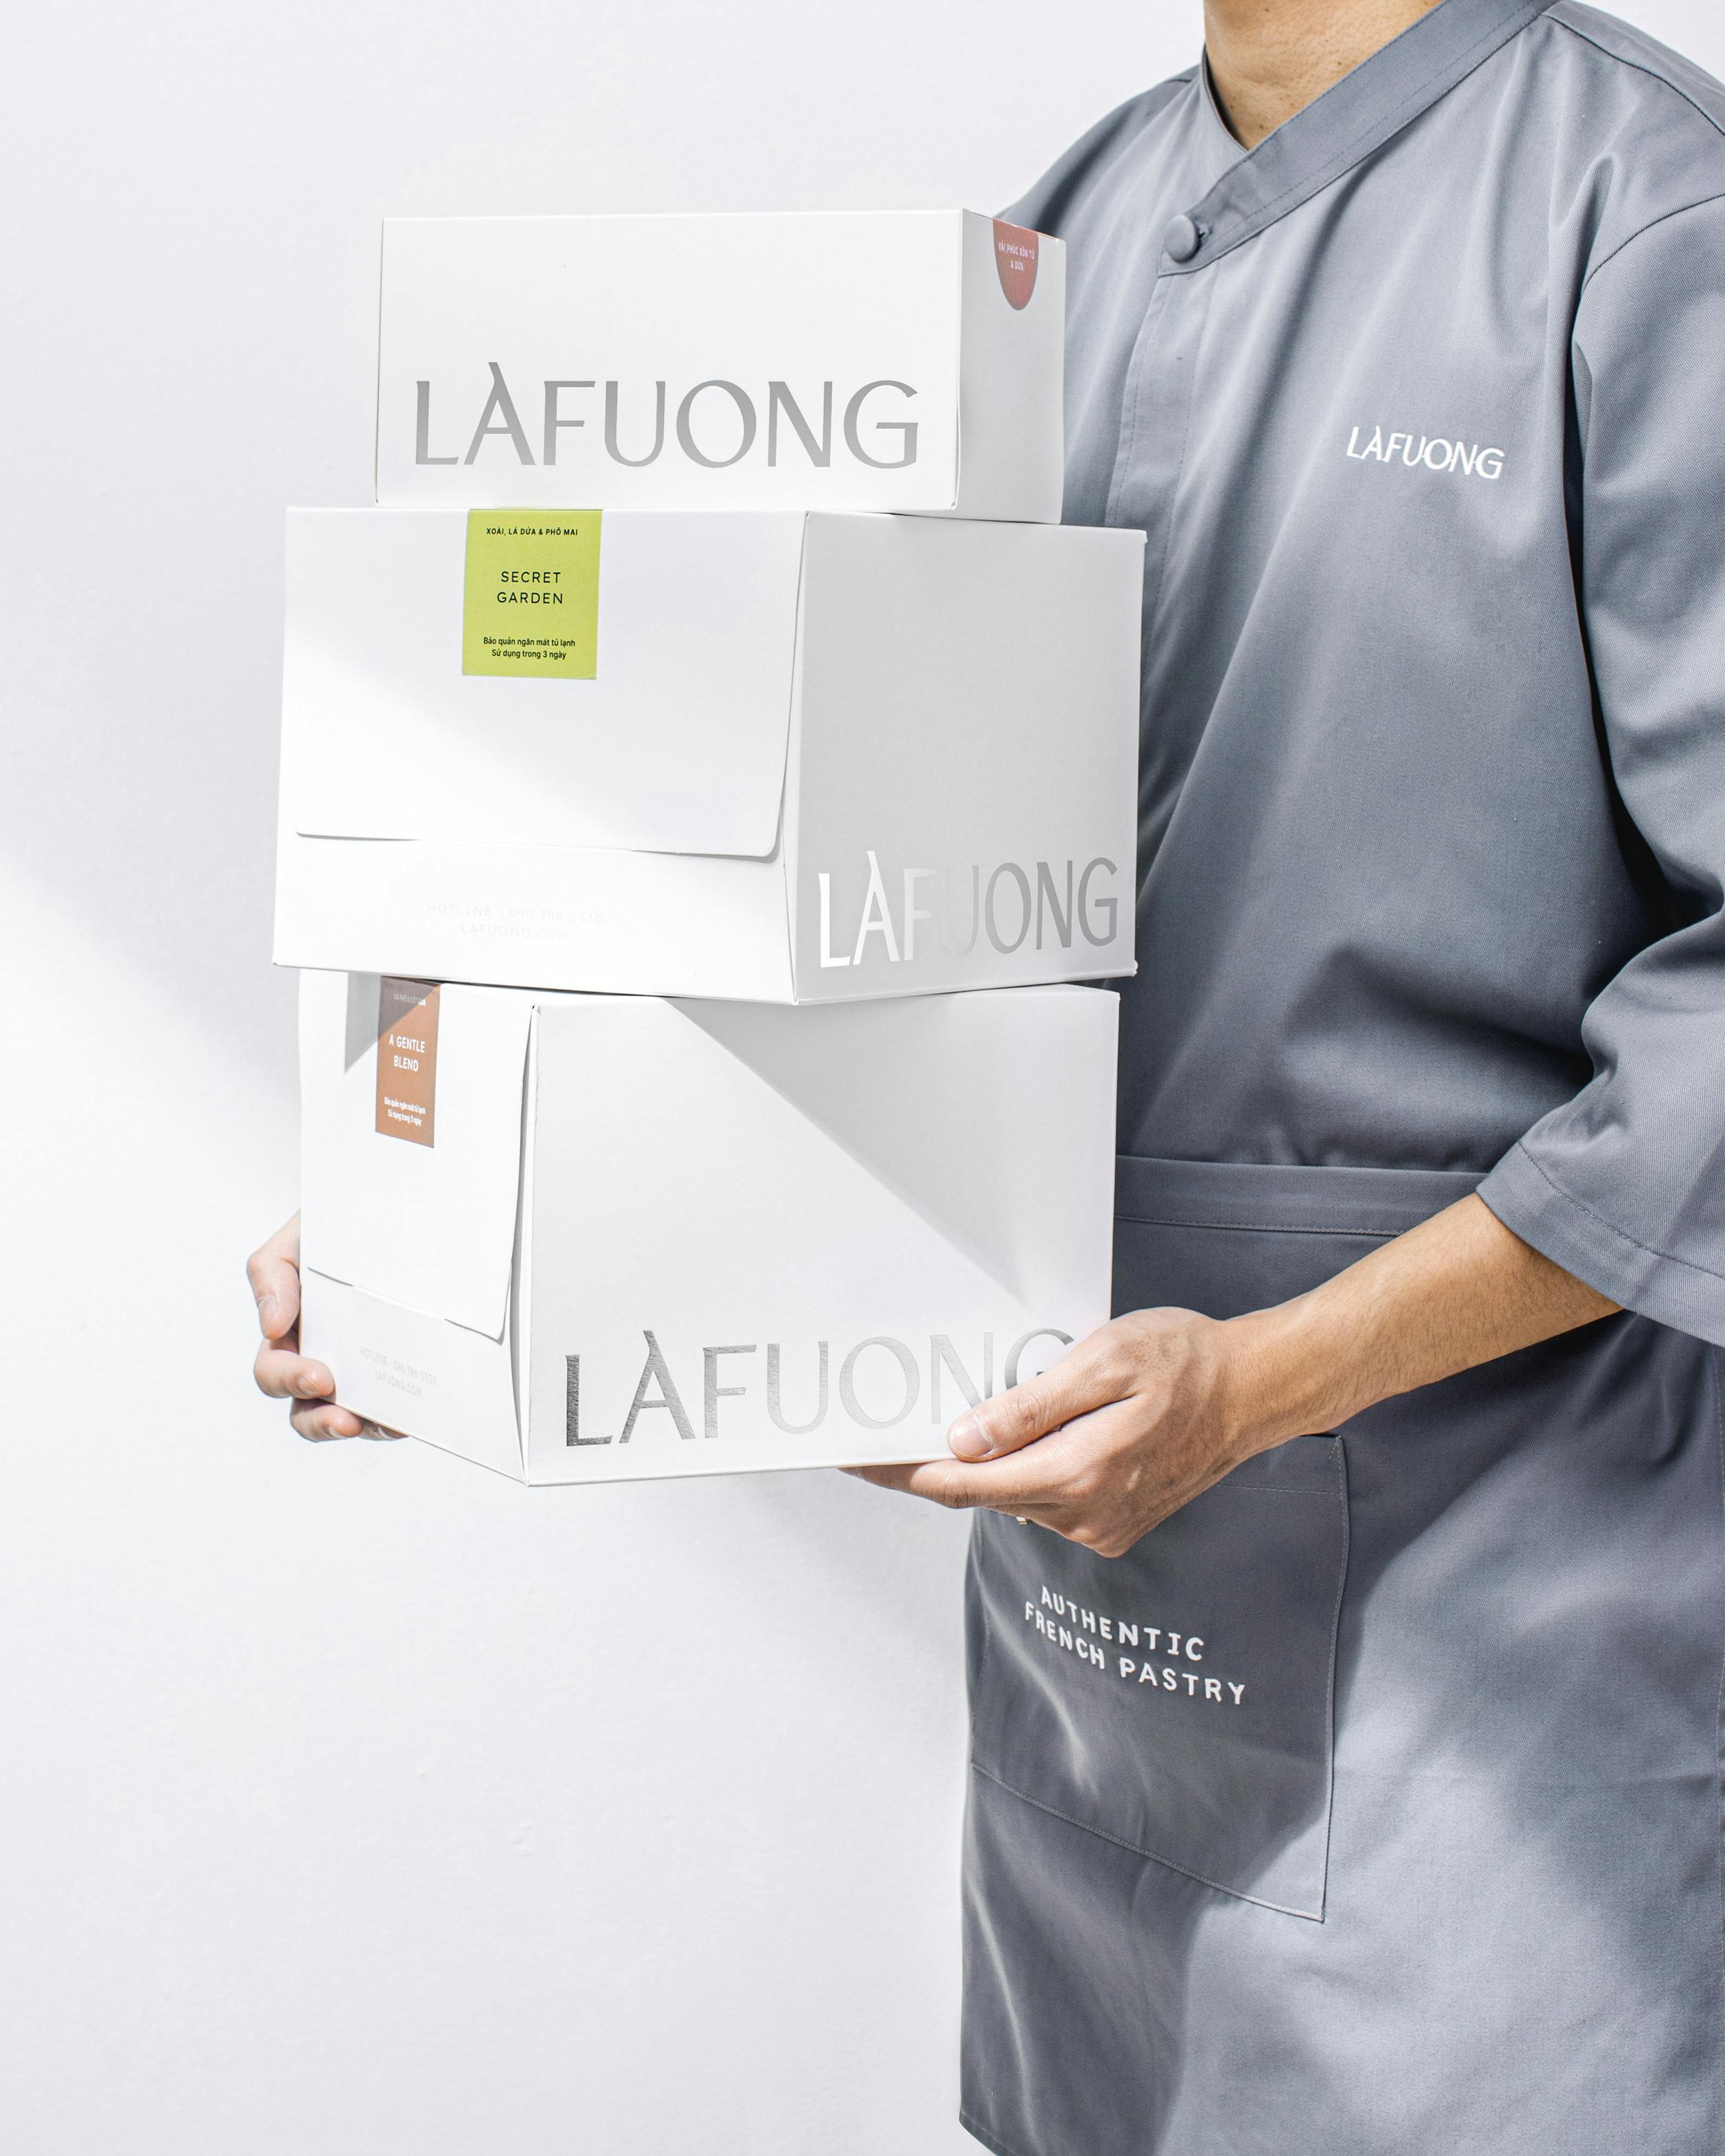 Hình ảnh nhân viên giao hàng mang hộp bánh của LAFUONG